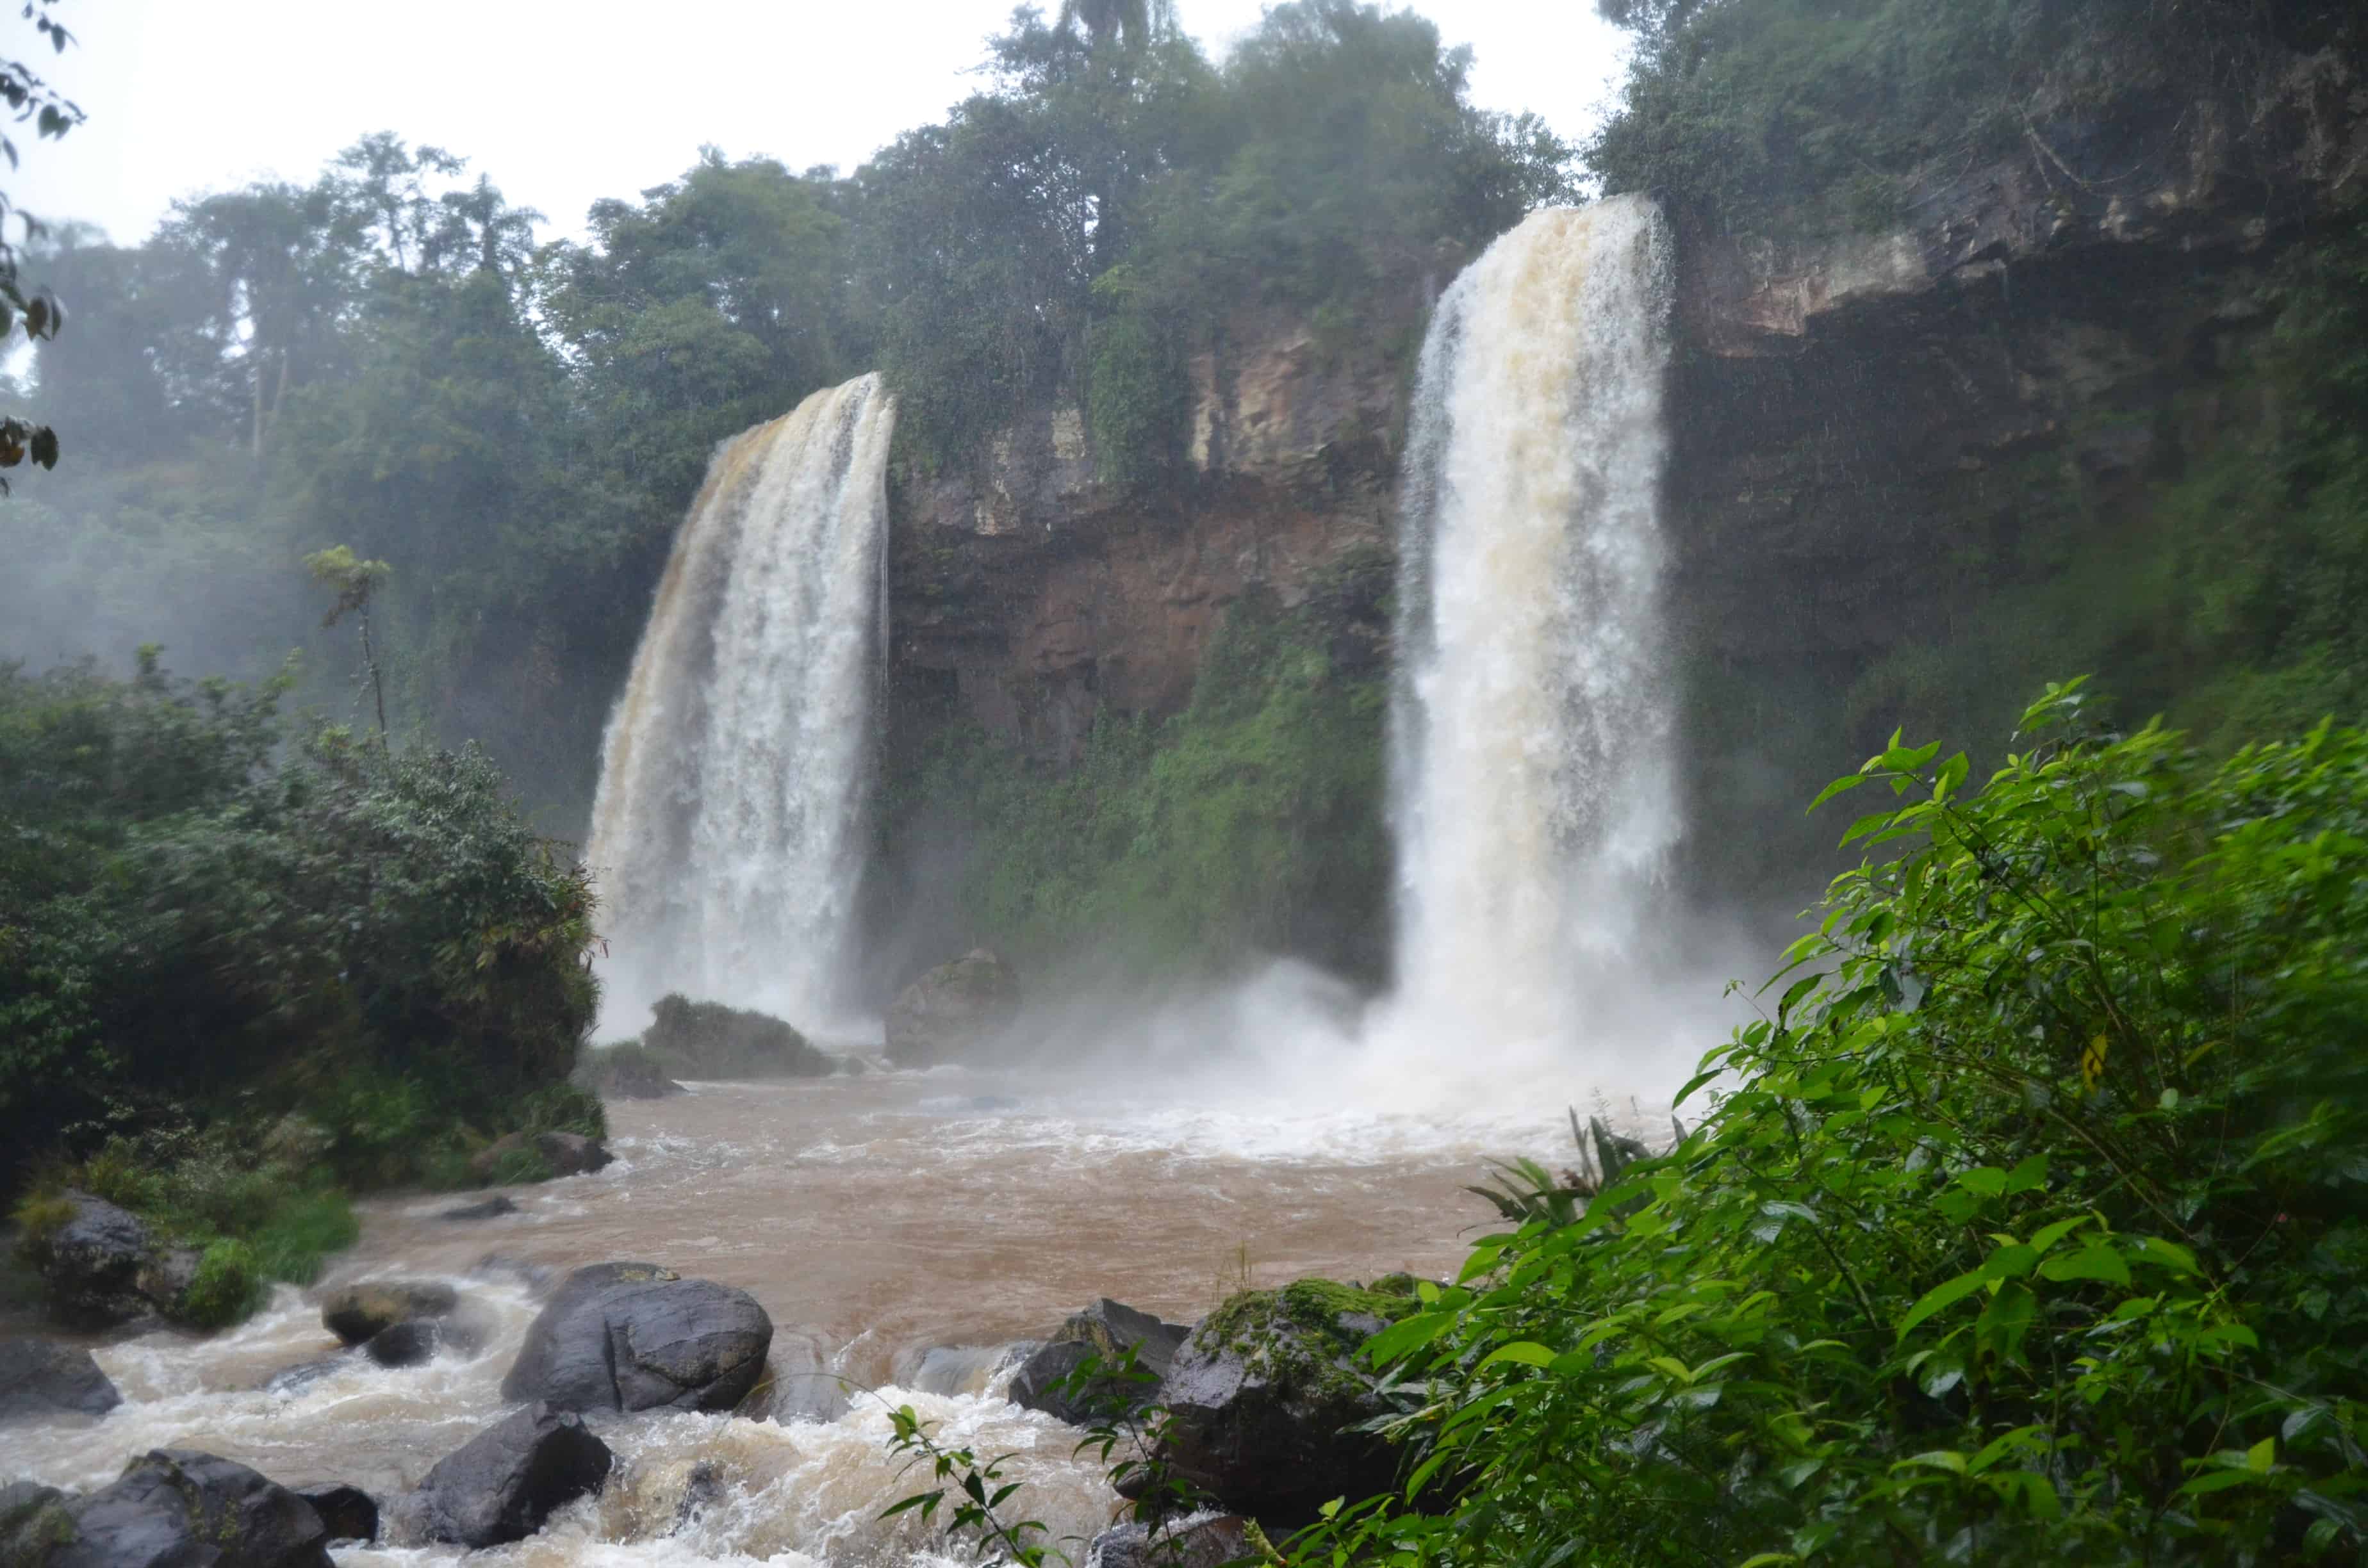 Lower Circuit of Parque Nacional Iguazú, Argentina